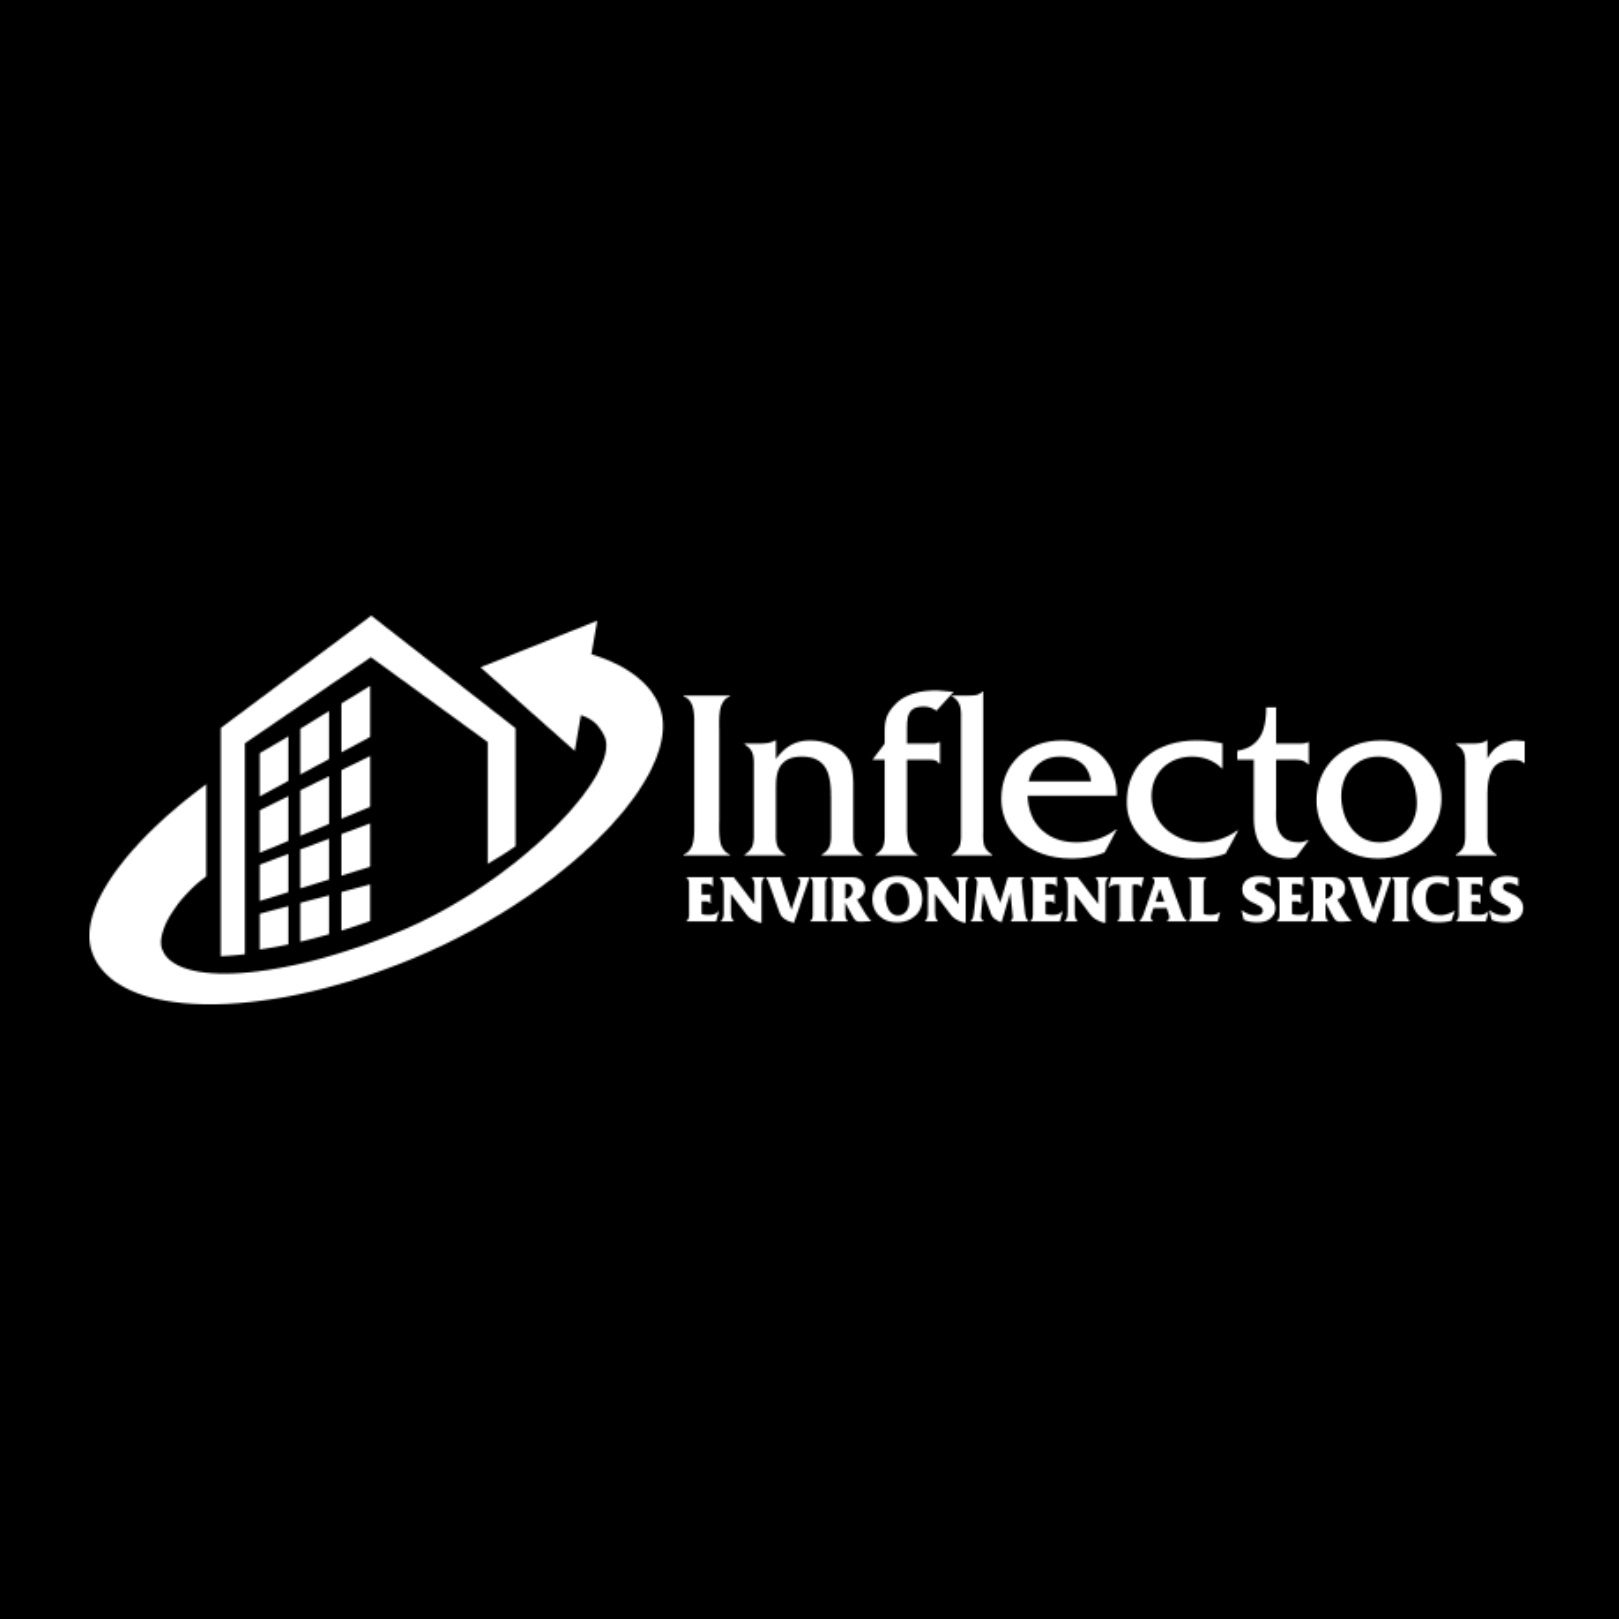 Inflector Environmental Services - Toronto